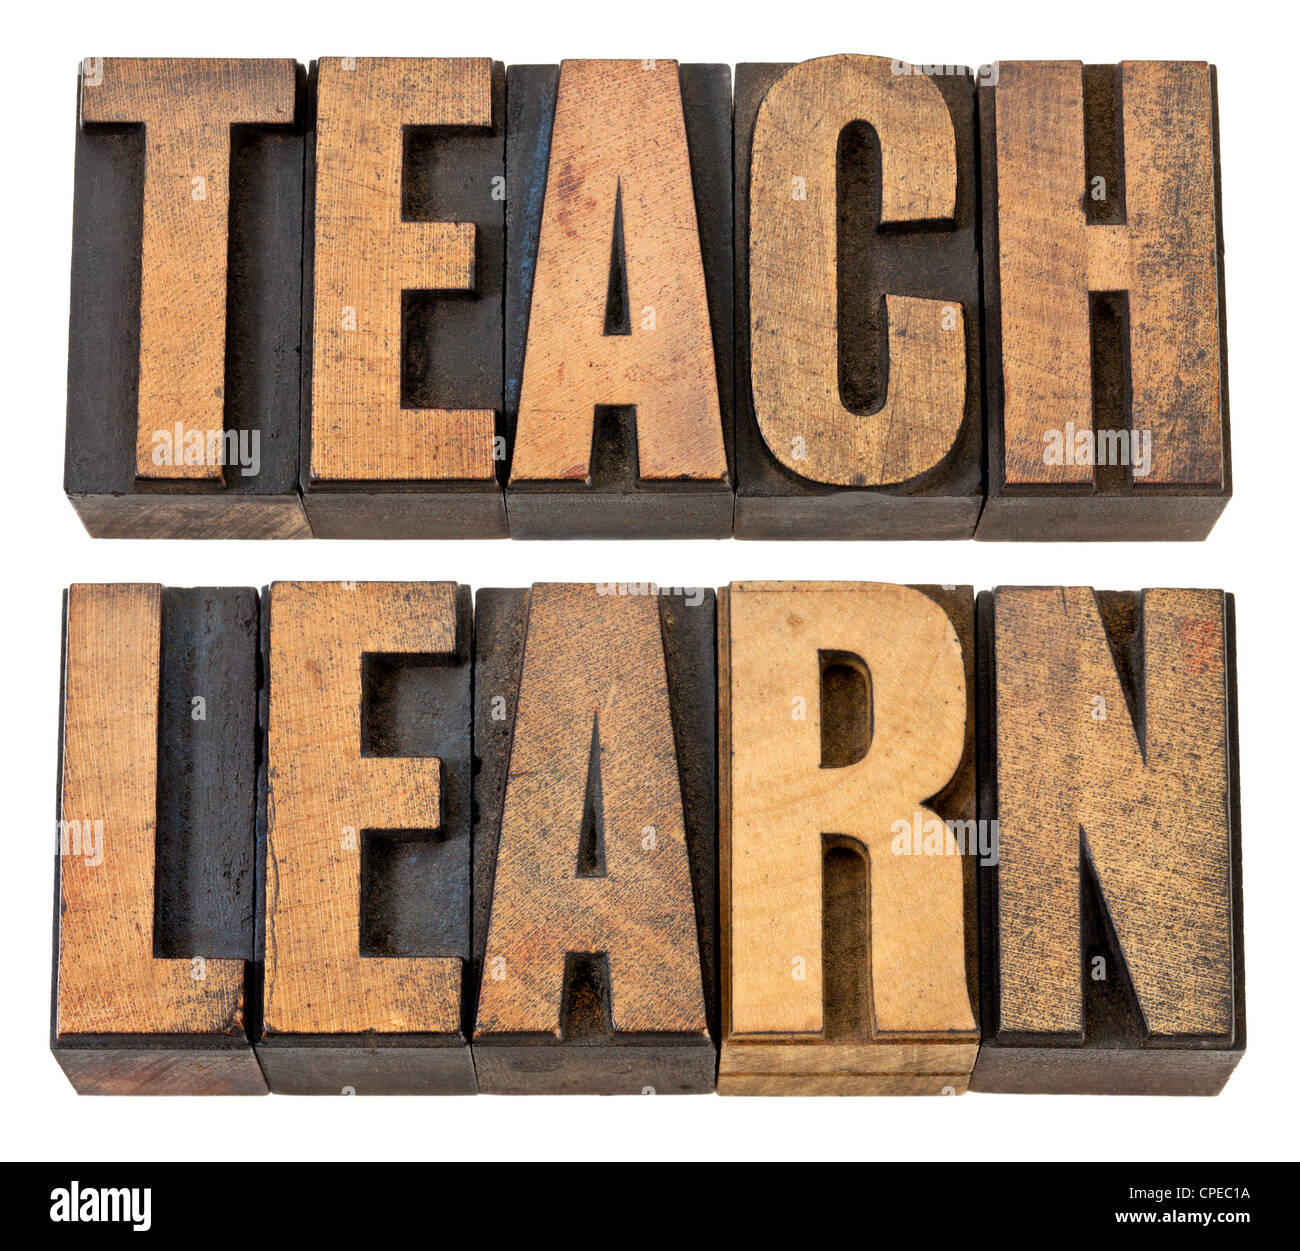 Enseñar y aprender - educación concepto - palabras aisladas en vintage tipografía tipo de madera Foto de stock